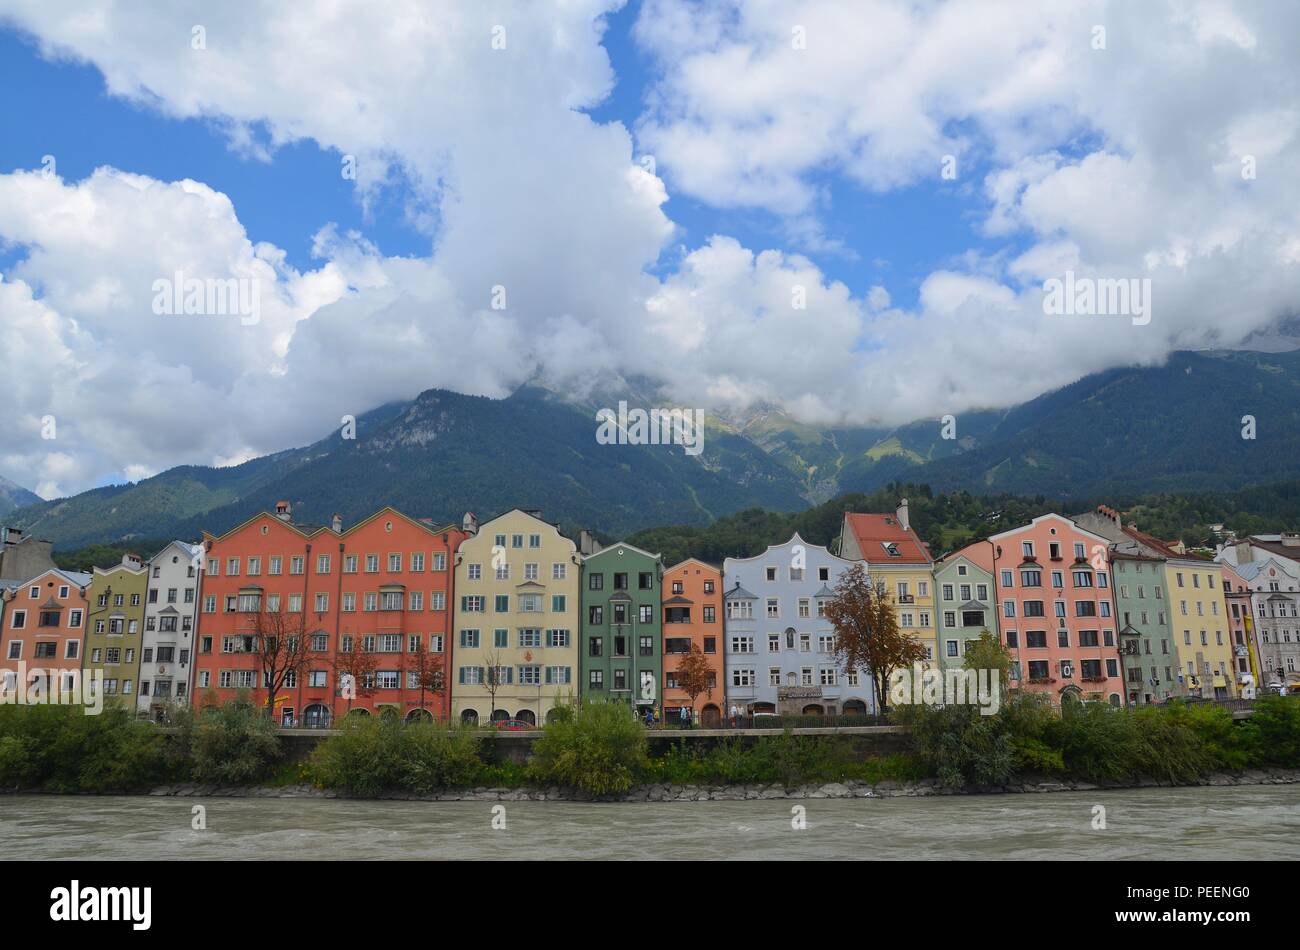 Innsbruck, die Hauptstadt Tirols, Österreich (Autriche) : Altstadthäuser Am Ufer des Inn dans der Vorstadt Hötting, Wolken und die Alpen Banque D'Images